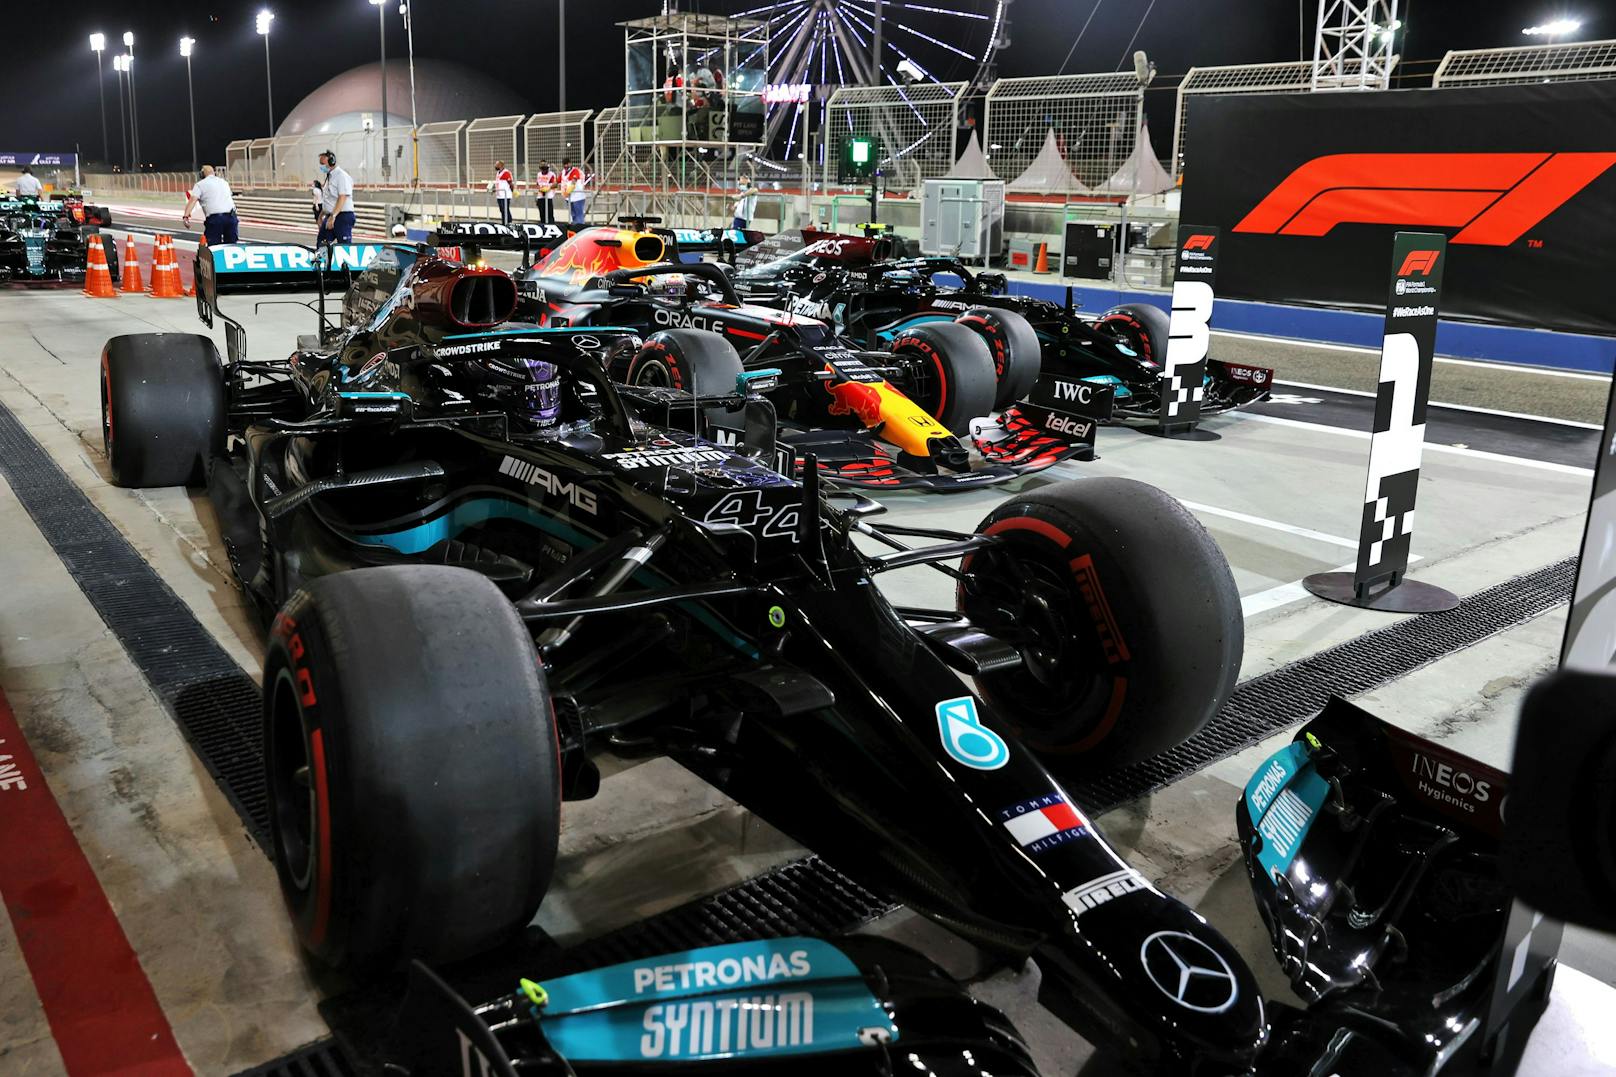 Hautnah dabei: Sieger-Bolide von Lewis Hamilton in Bahrain